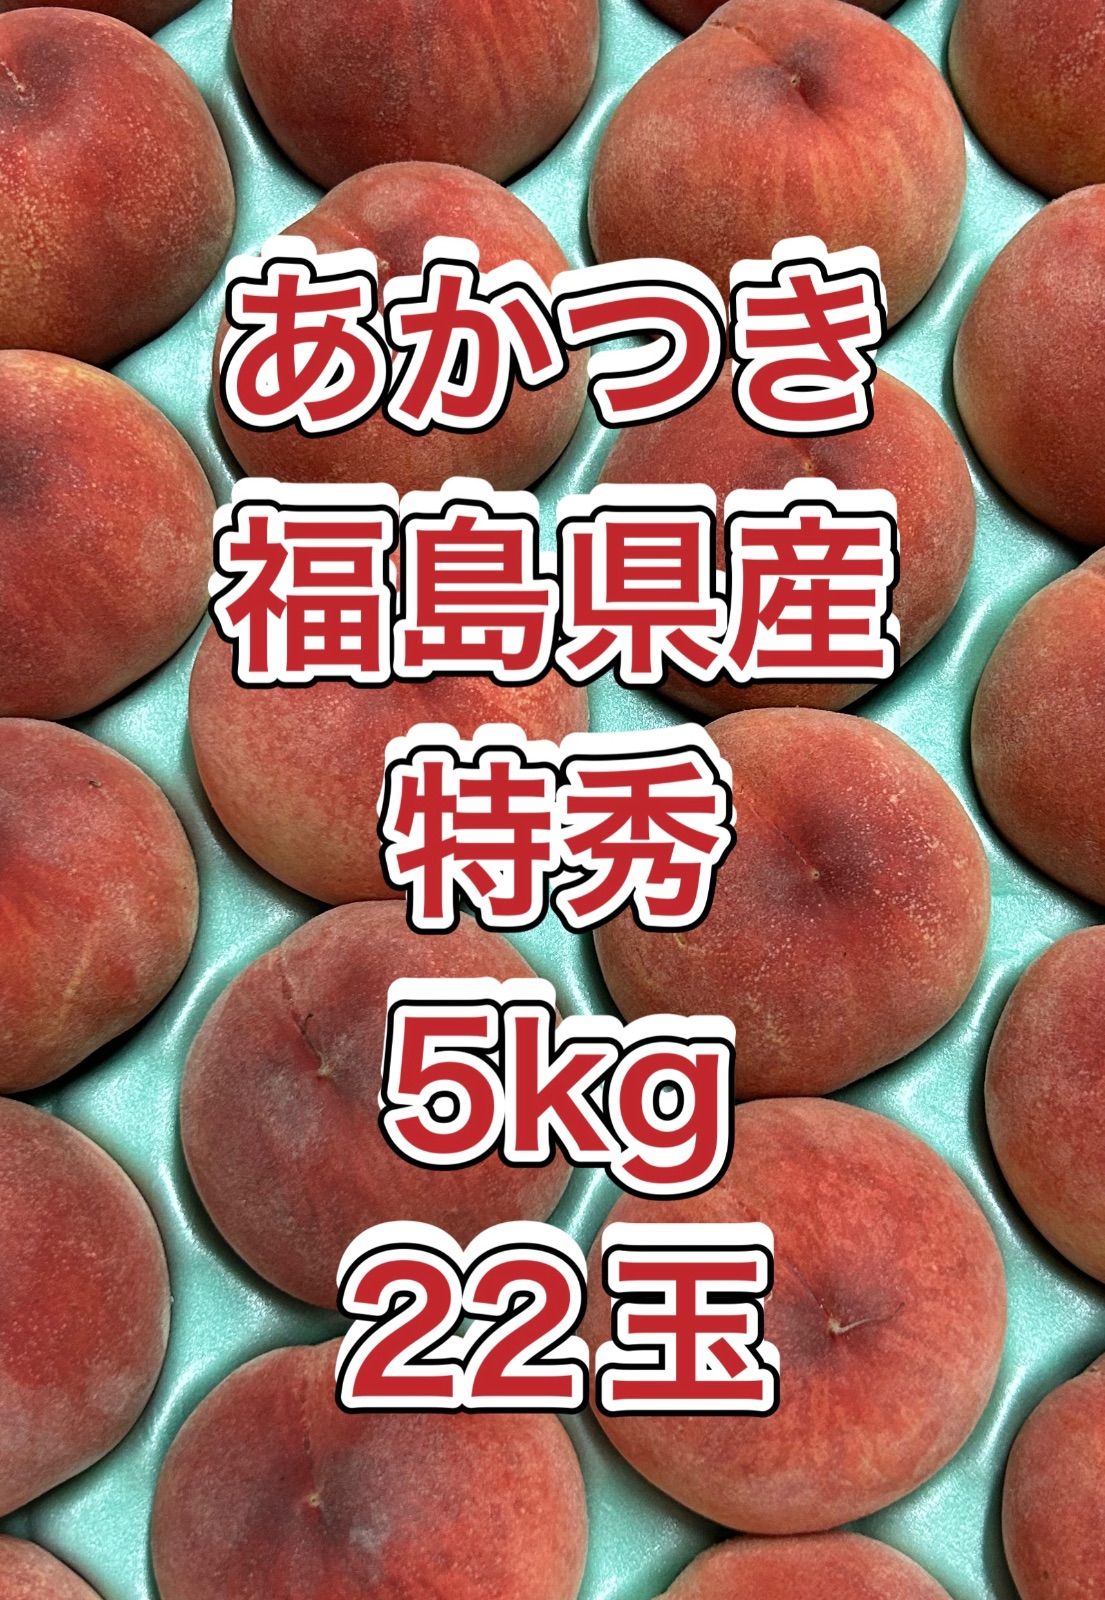 確認用 あかつきネオ 福島県産 家庭用 5kg22玉 果物 | tacwin.com